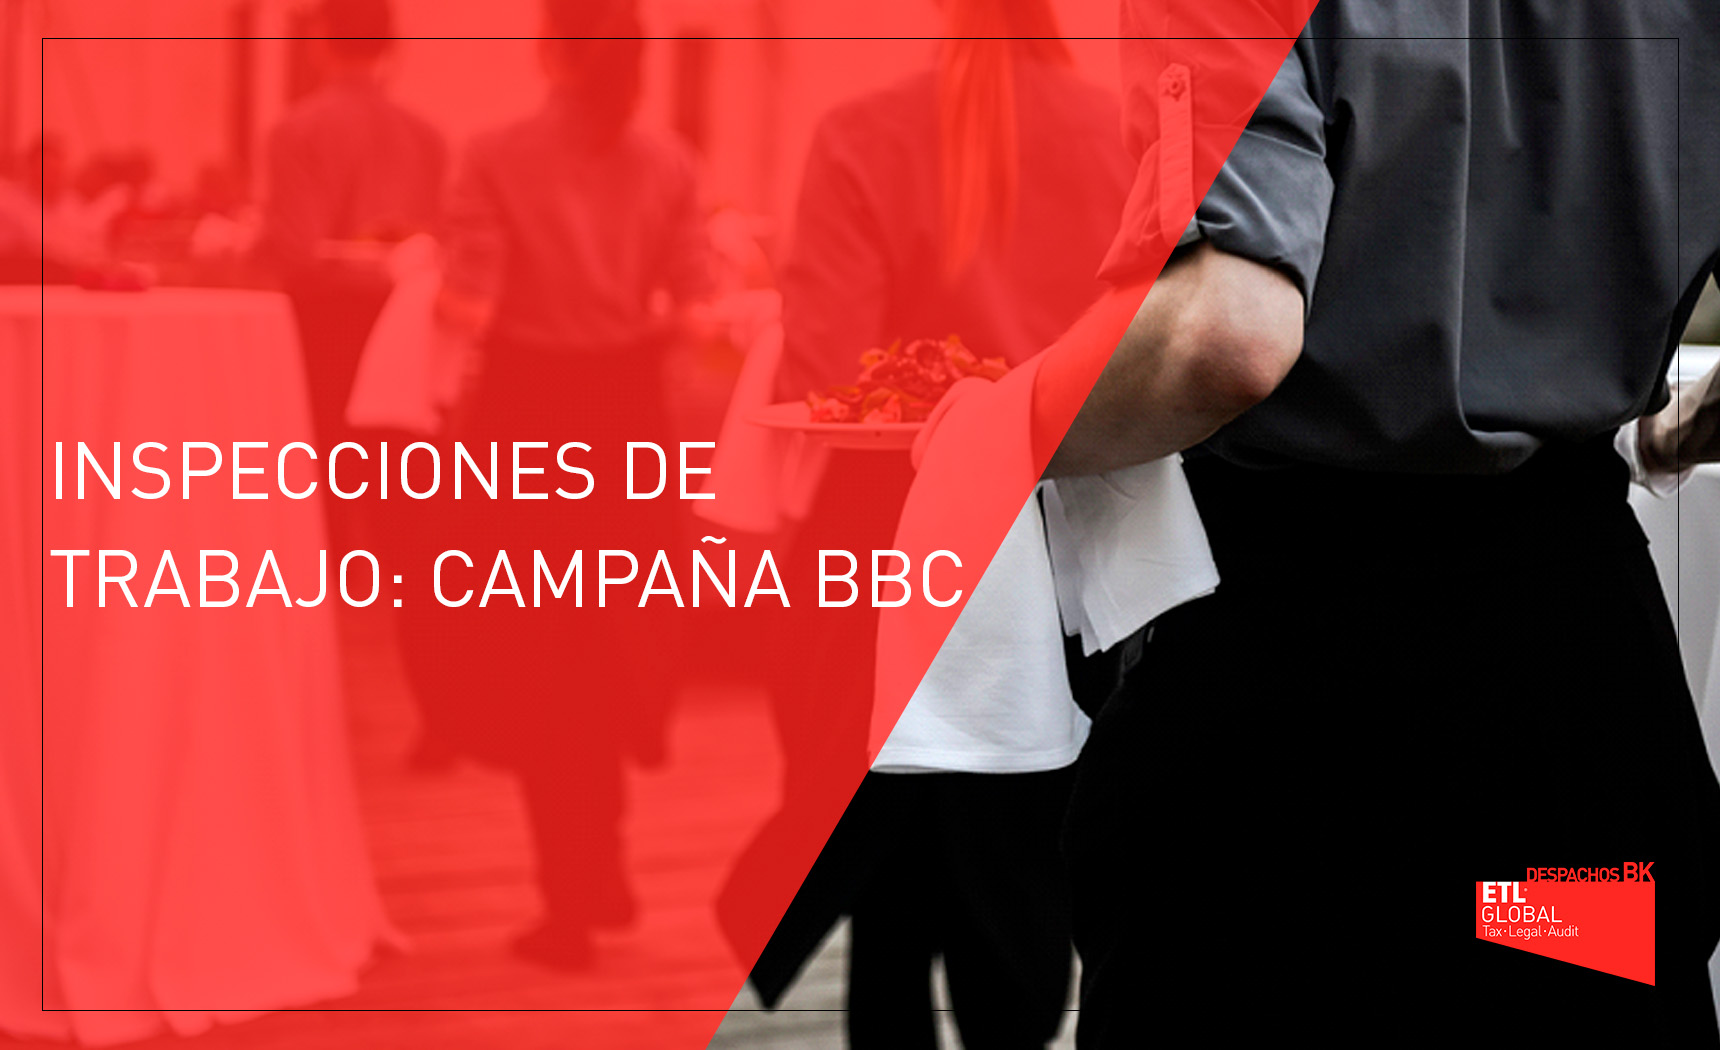 INSPECCIONES DE TRABAJO CAMPAÑA BBC